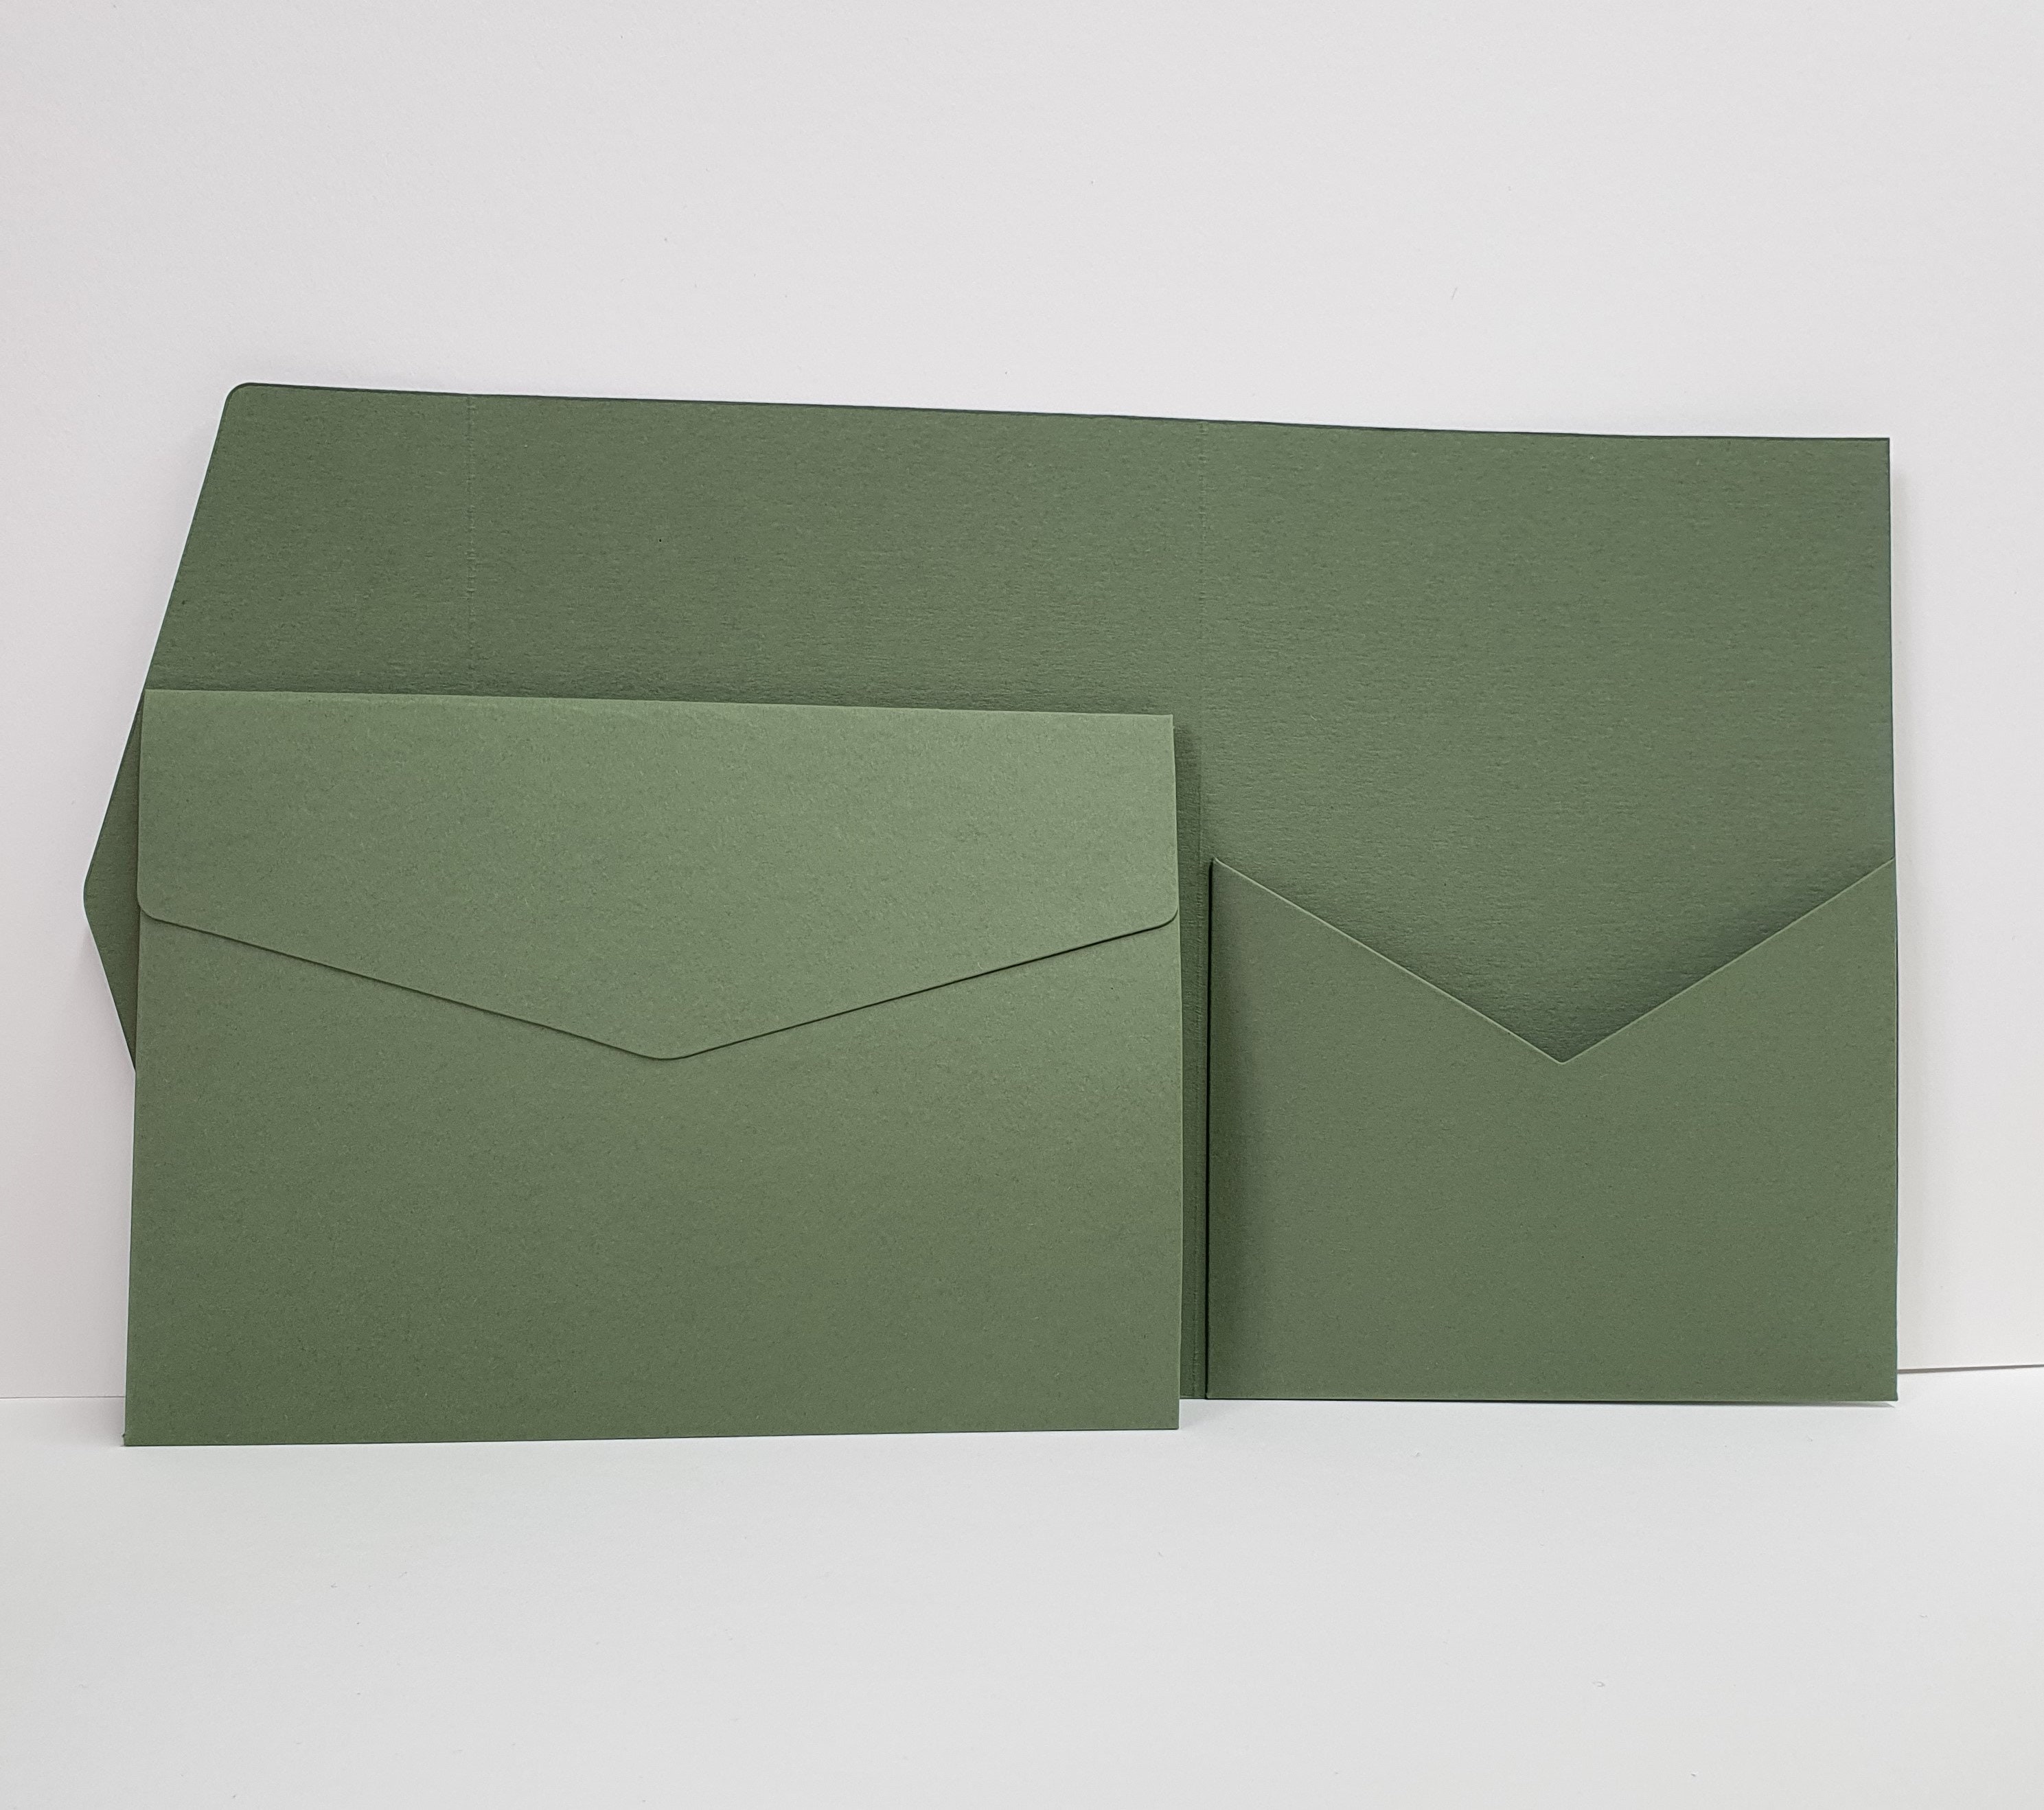 C5 Black Envelopes 100gsm - Envelopes4You